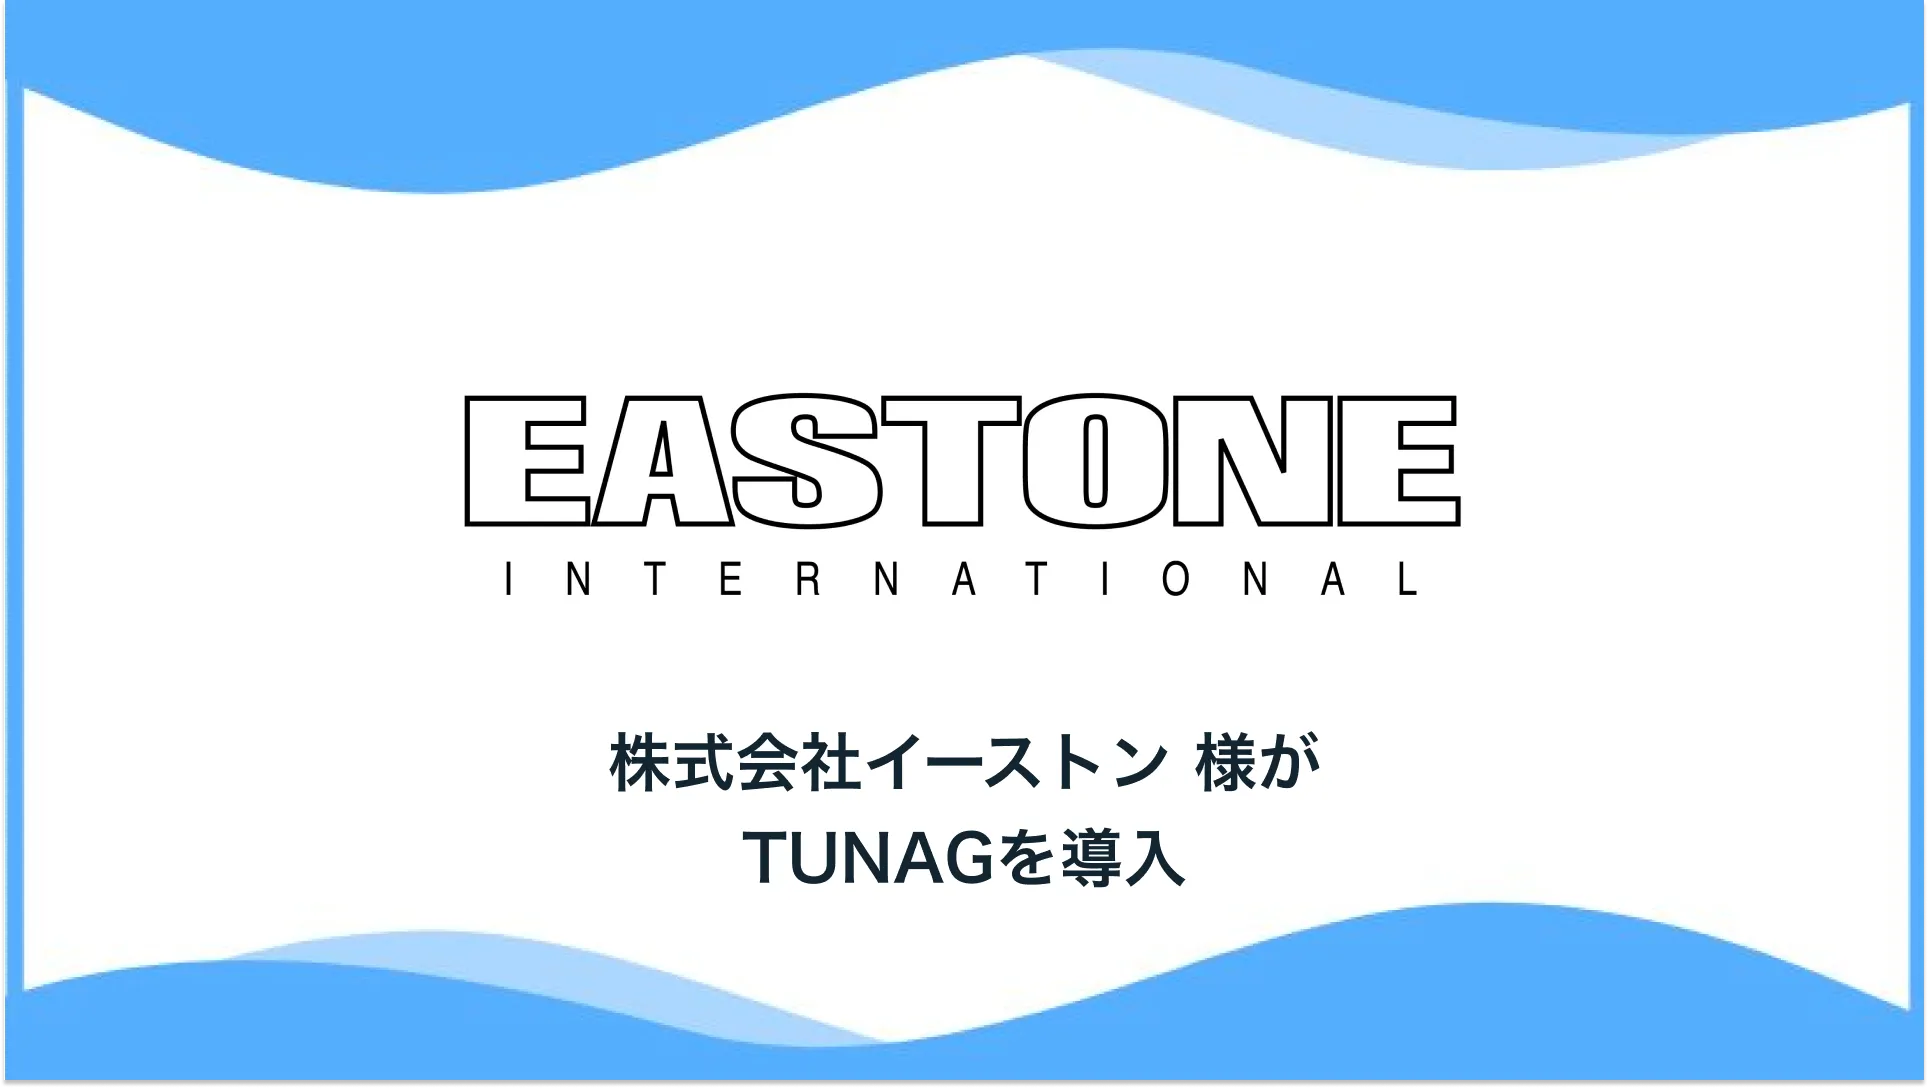 「食で日本を元気に！」をミッションに、北海道を拠点に飲食店を展開する株式会社イーストン様、「TUNAG」を導入